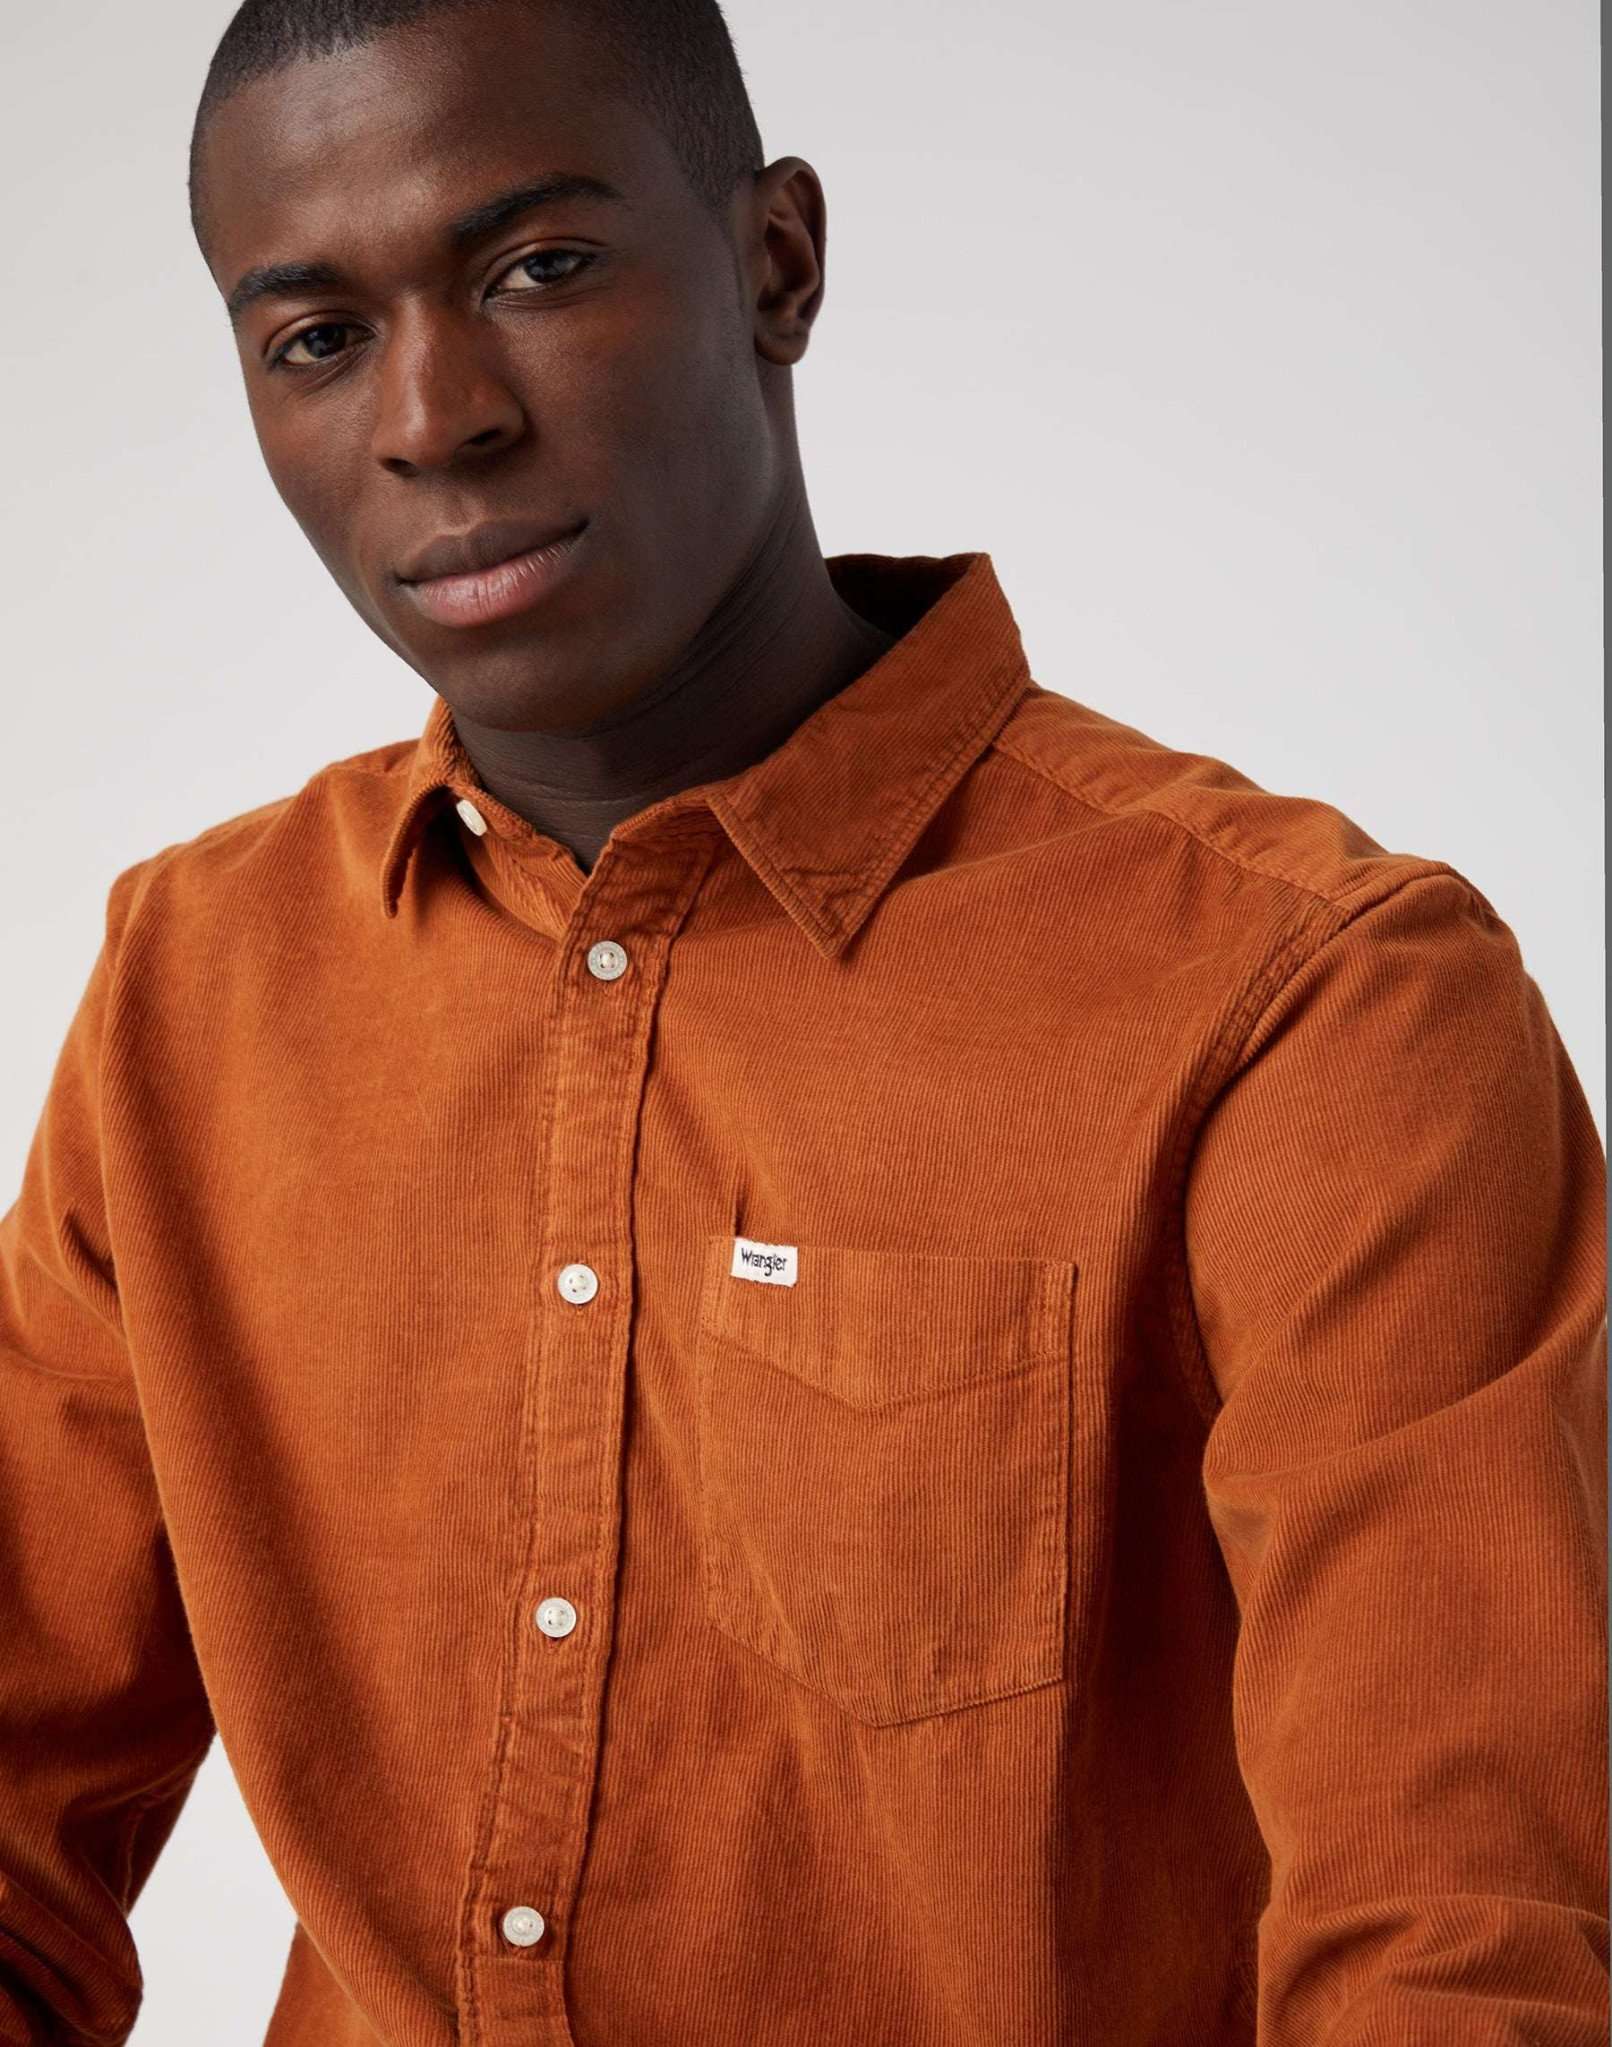 One Pocket Shirt in Leather Brown Hemden Wrangler   